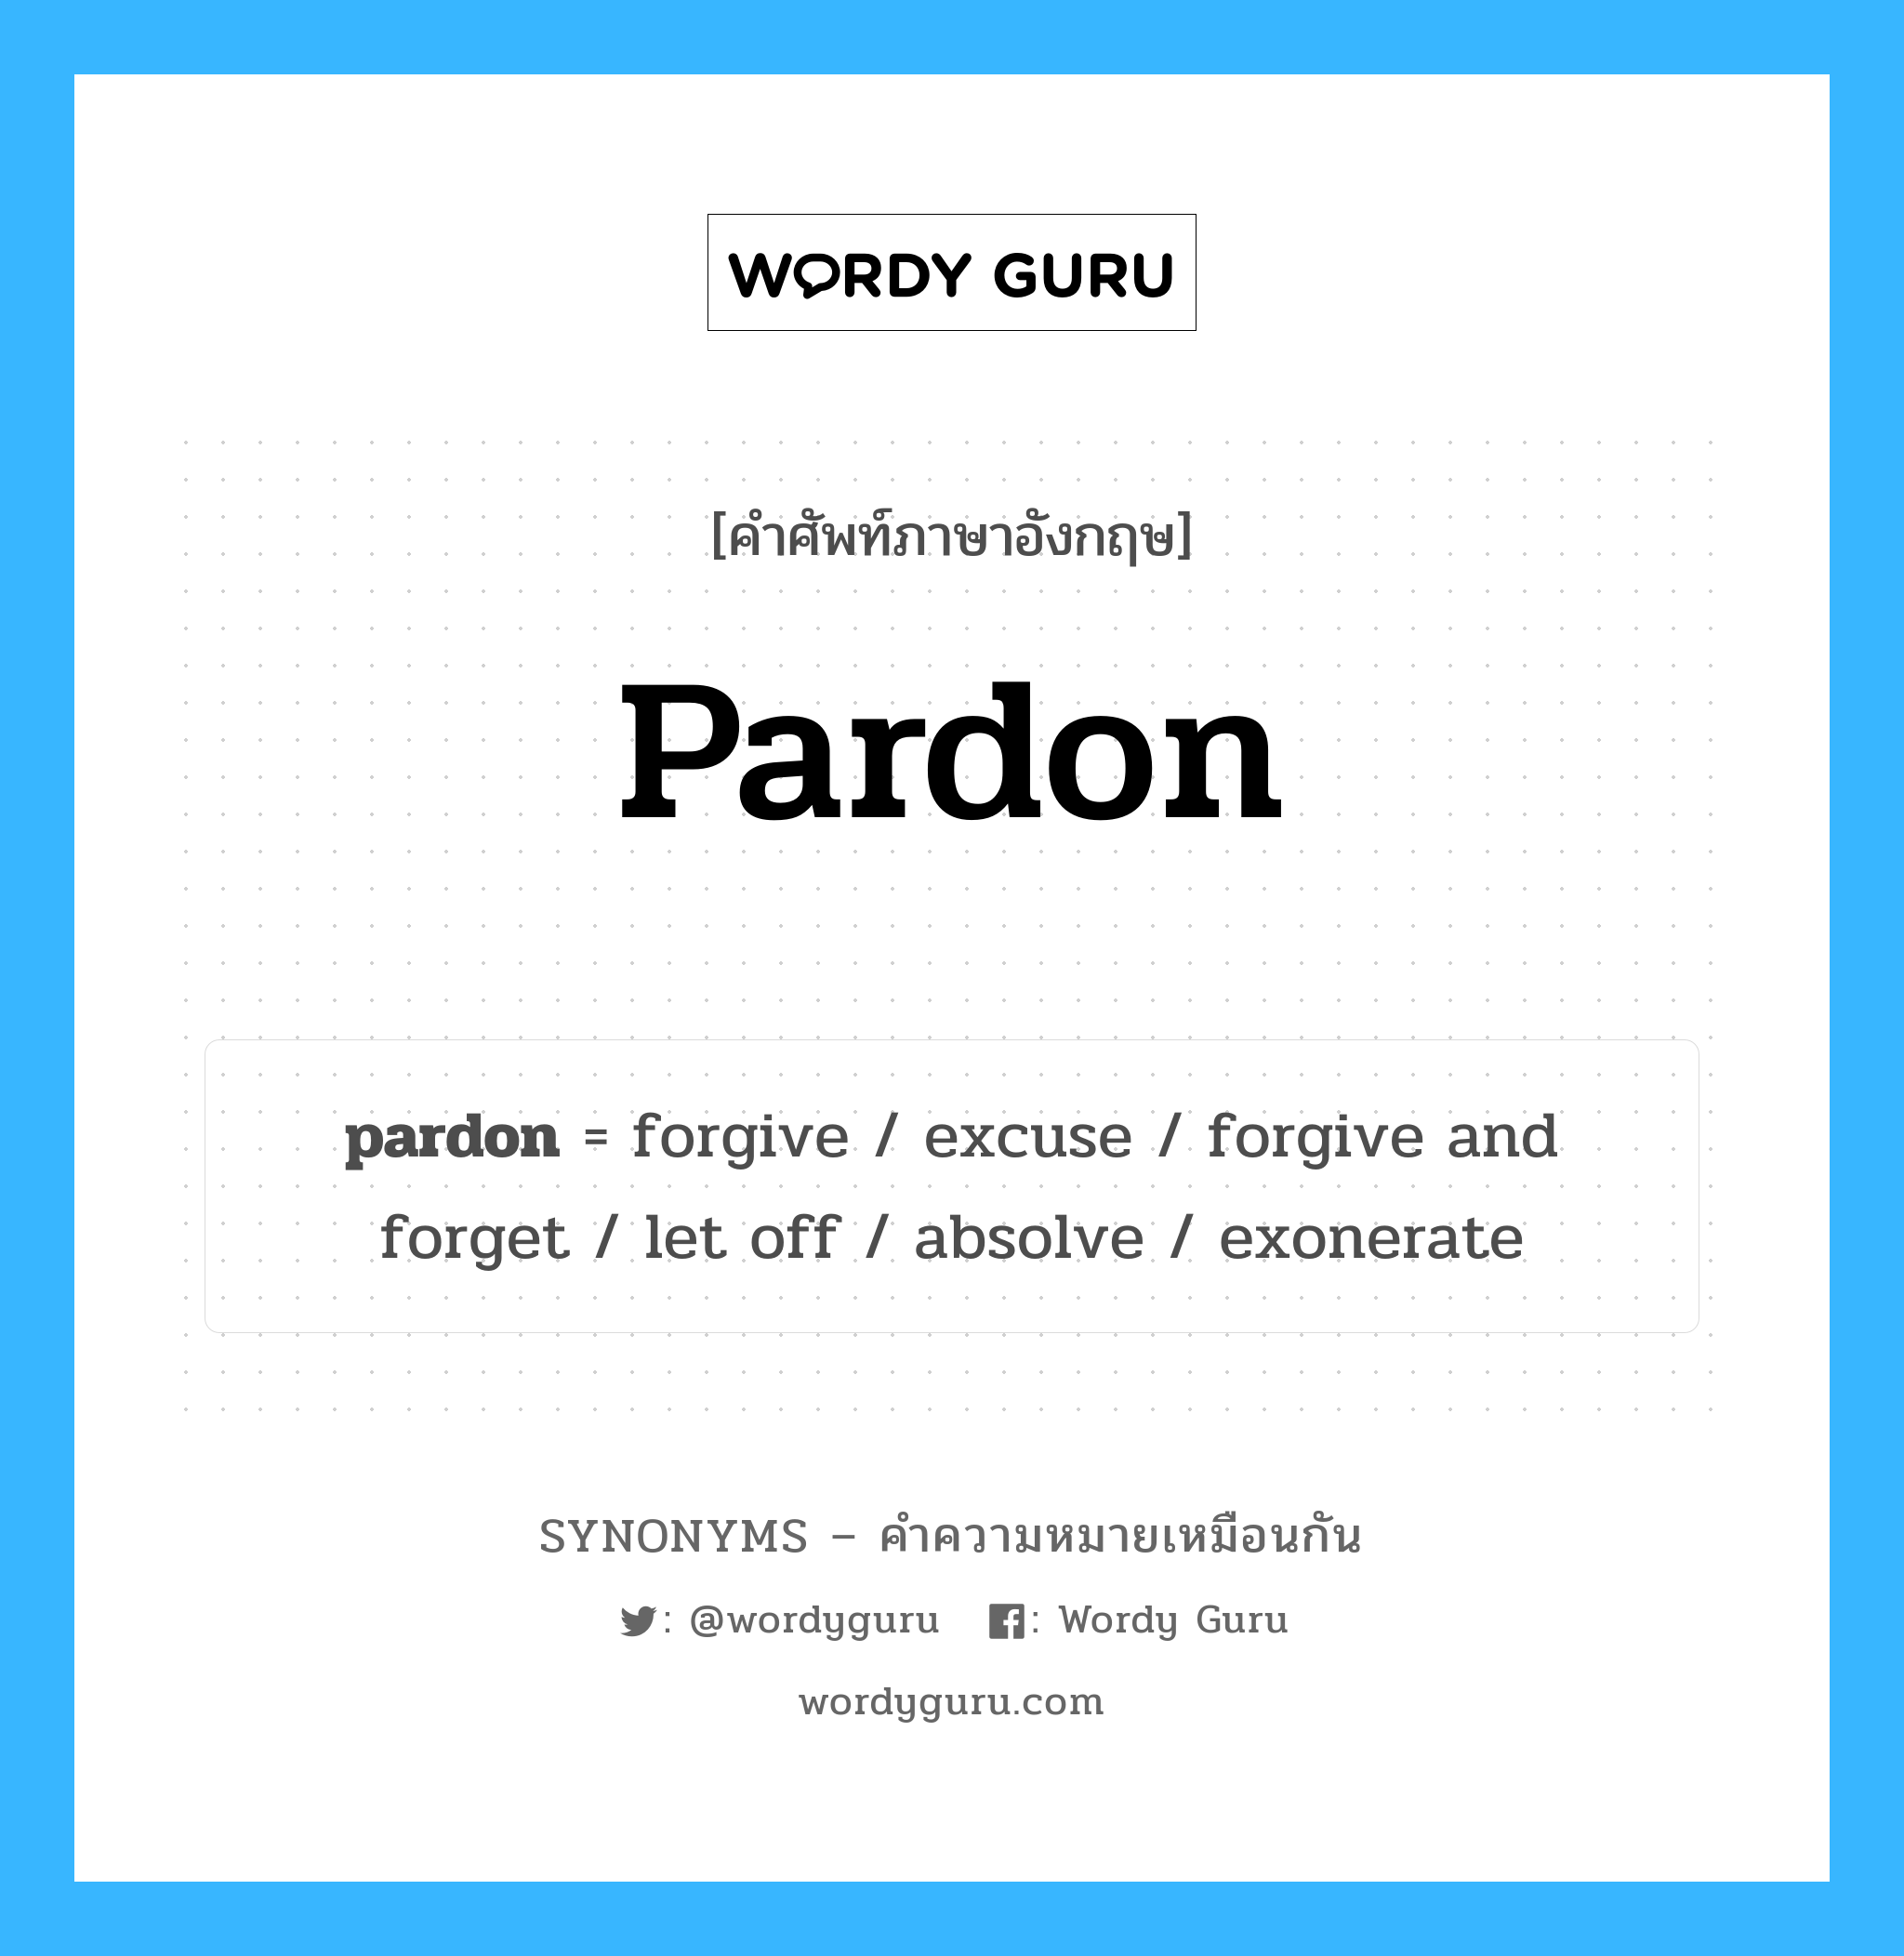 forgive เป็นหนึ่งใน pardon และมีคำอื่น ๆ อีกดังนี้, คำศัพท์ภาษาอังกฤษ forgive ความหมายคล้ายกันกับ pardon แปลว่า ยกโทษให้ หมวด pardon